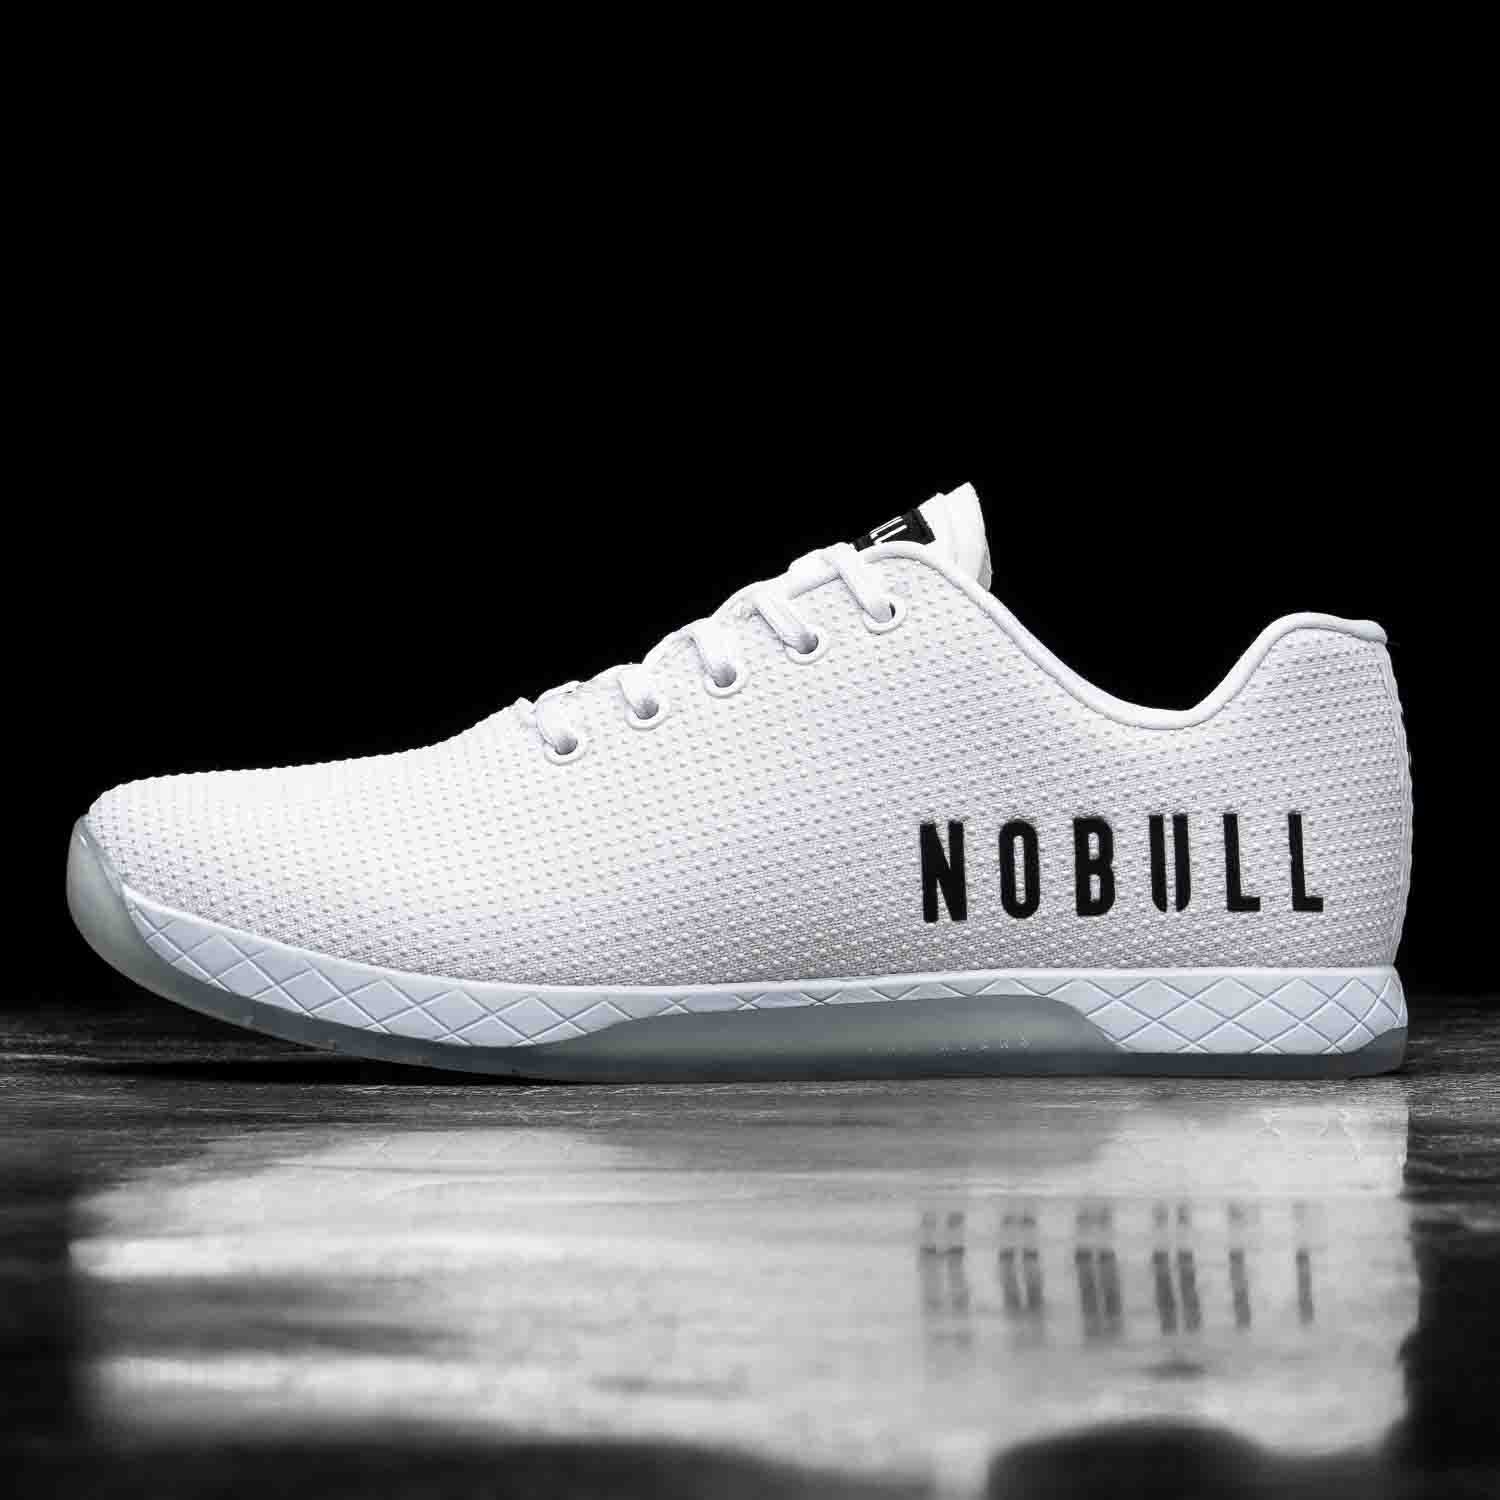 NOBULL releases new Court Trainer